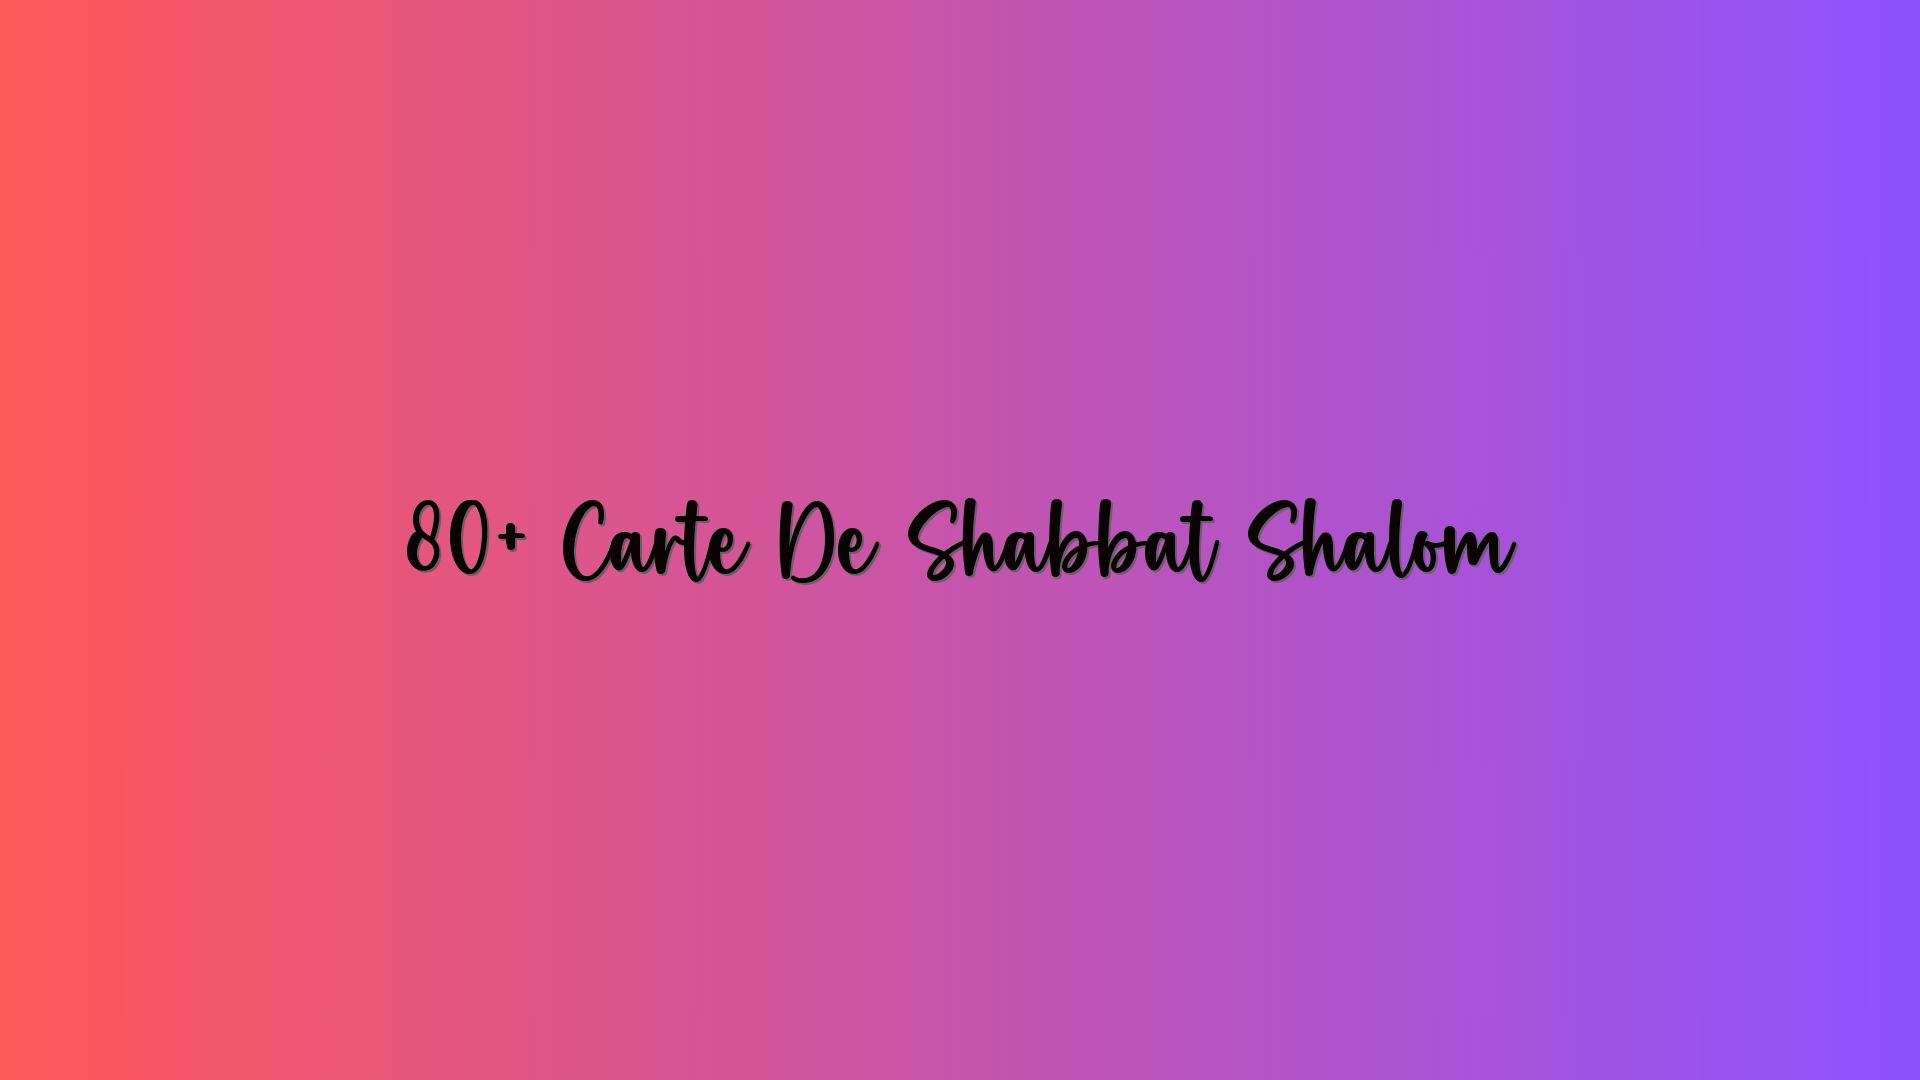 80+ Carte De Shabbat Shalom